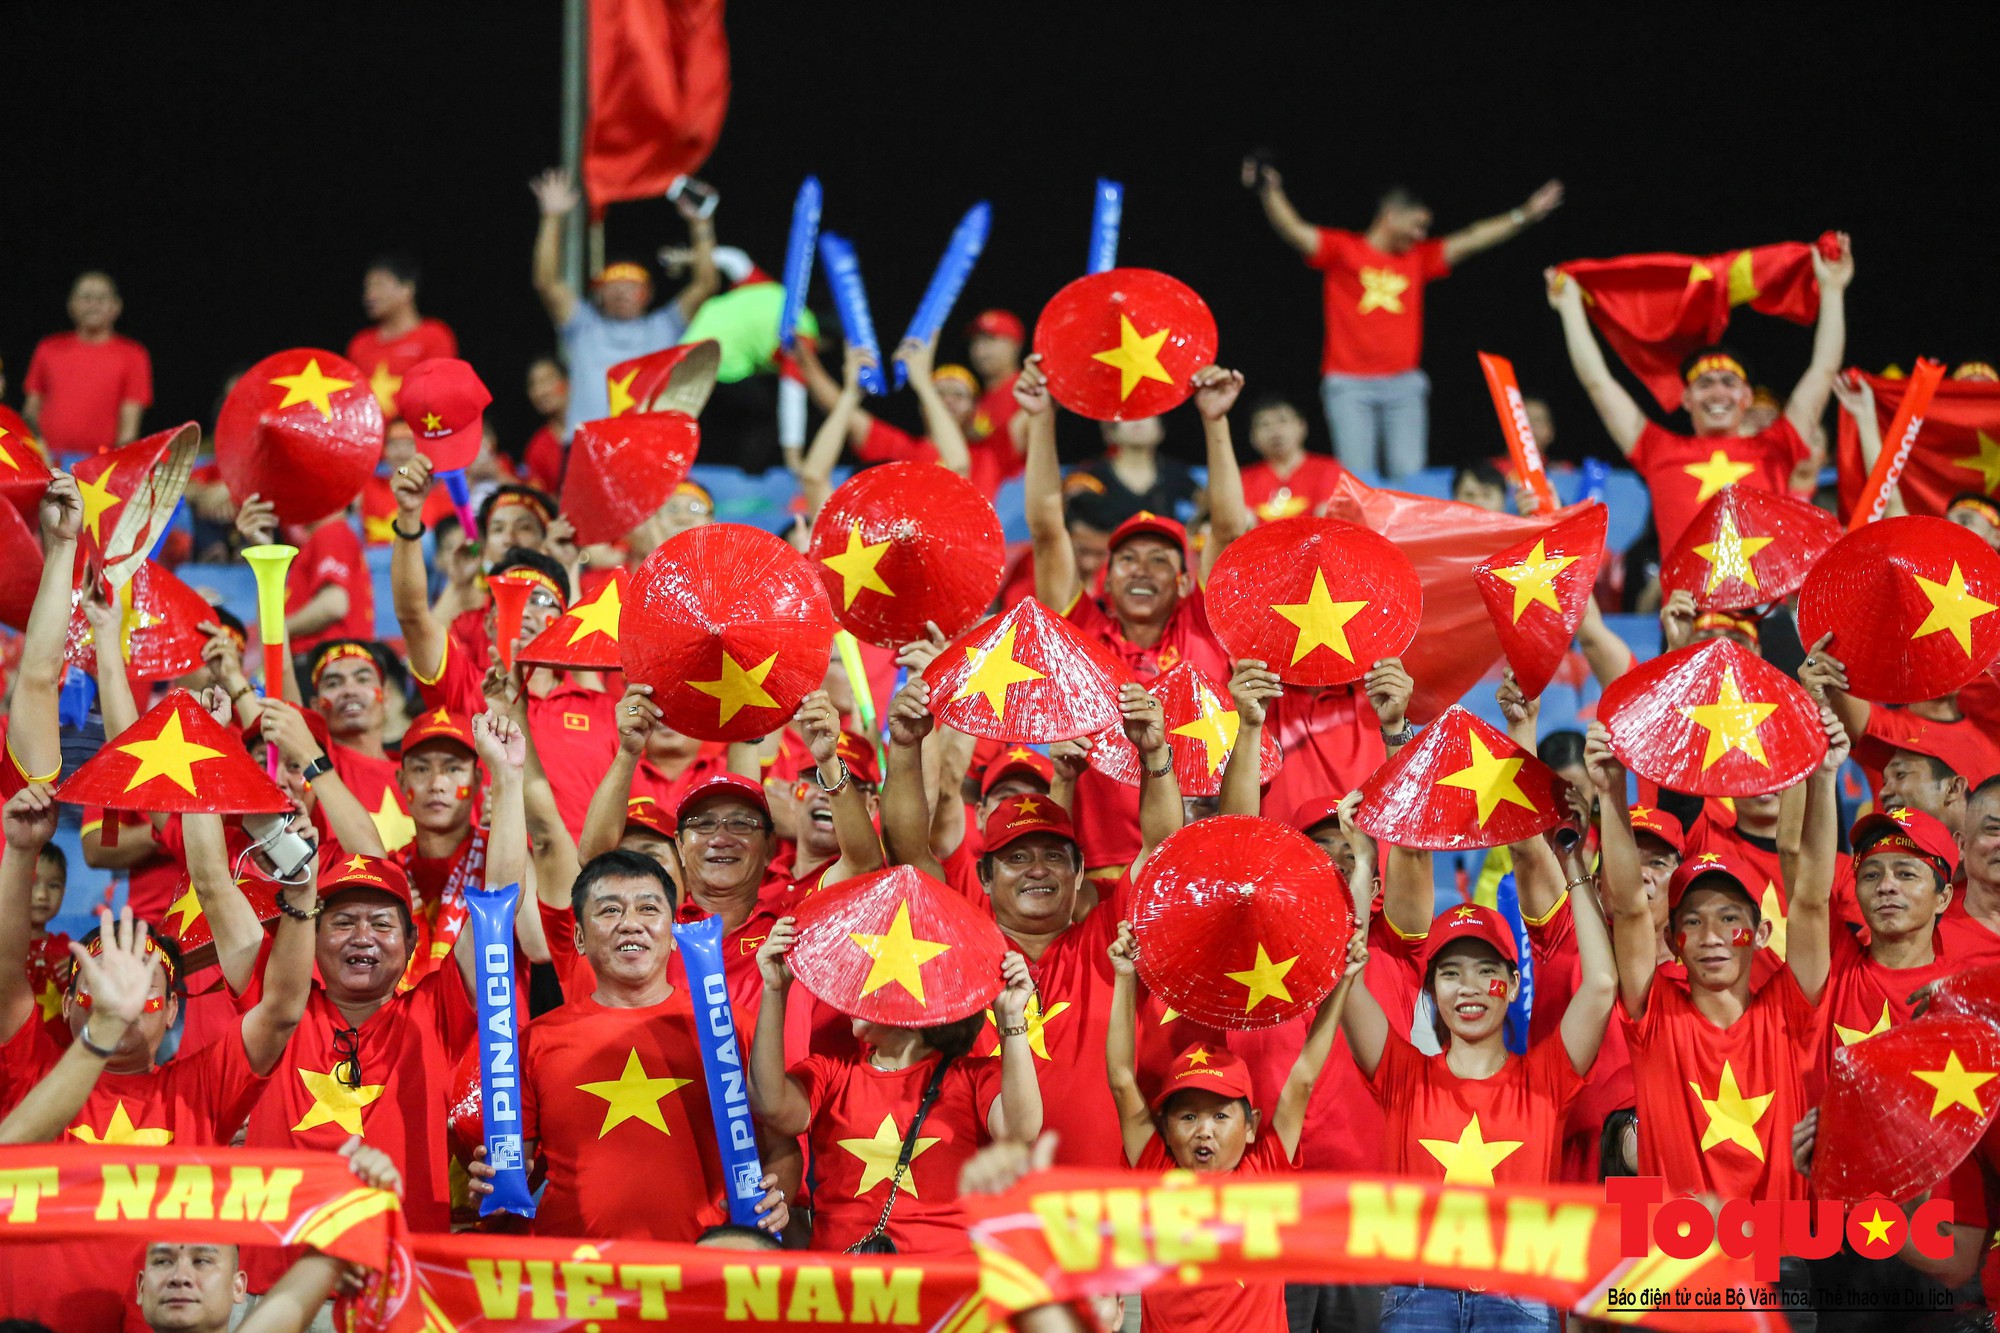 Cùng nhau cổ vũ cho đội tuyển Việt Nam ngày mai! Hãy đến xem bộ sưu tập ảnh mang đến những khoảnh khắc đầy hứng khởi và cảm xúc đáng nhớ của các CĐV Việt Nam trong những trận đấu tại sân vận động quốc gia Mỹ Đình. Chào đón một Việt Nam với lòng đam mê bóng đá to lớn.